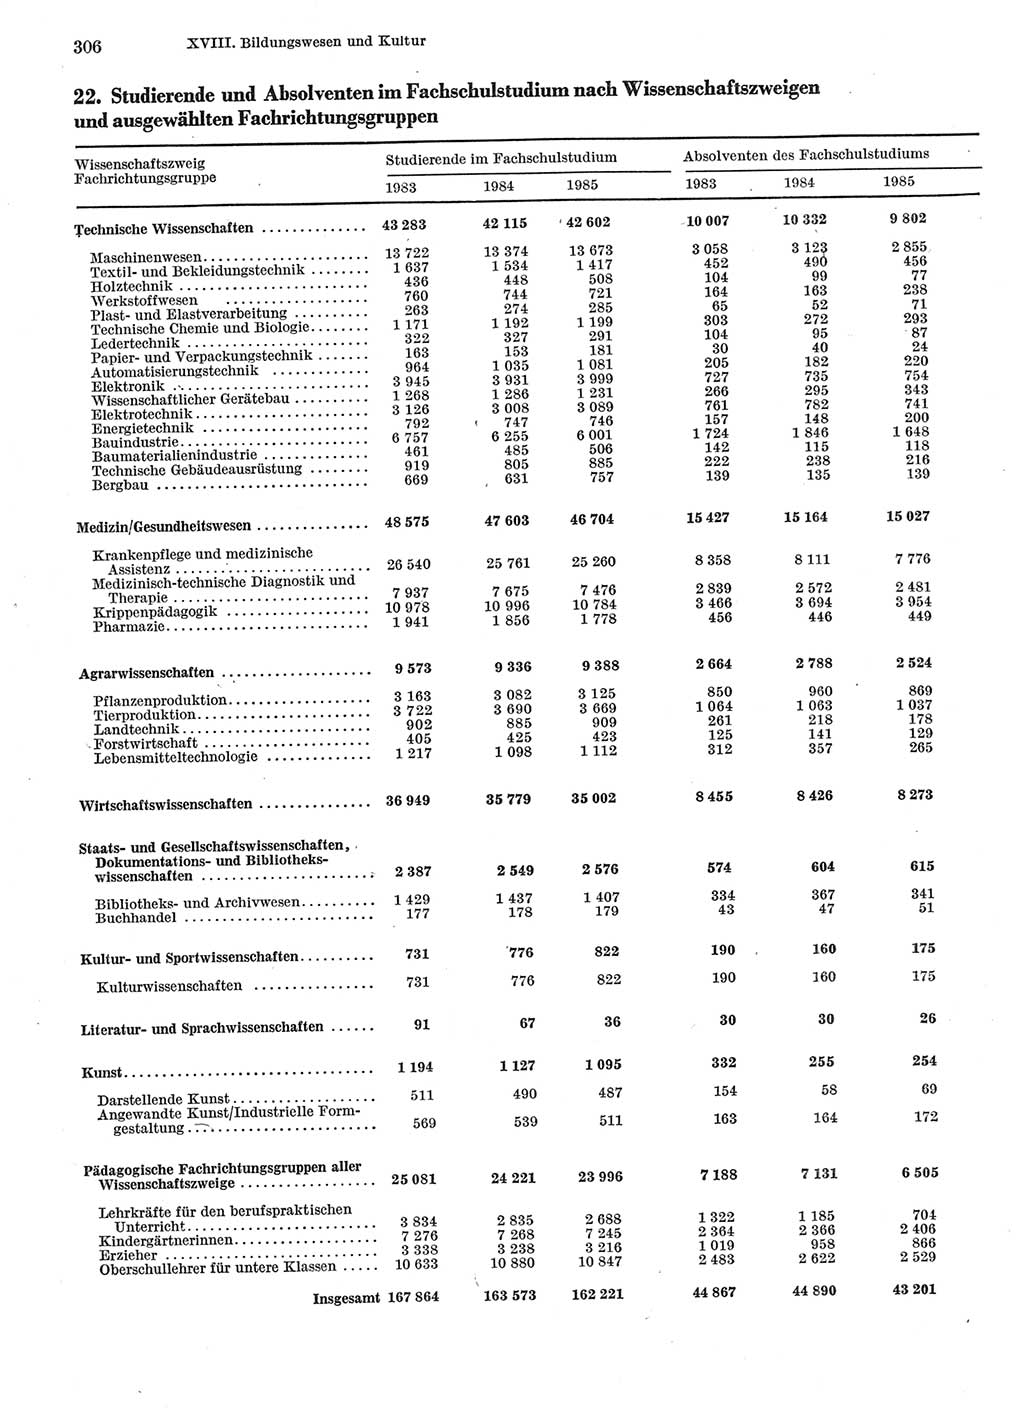 Statistisches Jahrbuch der Deutschen Demokratischen Republik (DDR) 1986, Seite 306 (Stat. Jb. DDR 1986, S. 306)